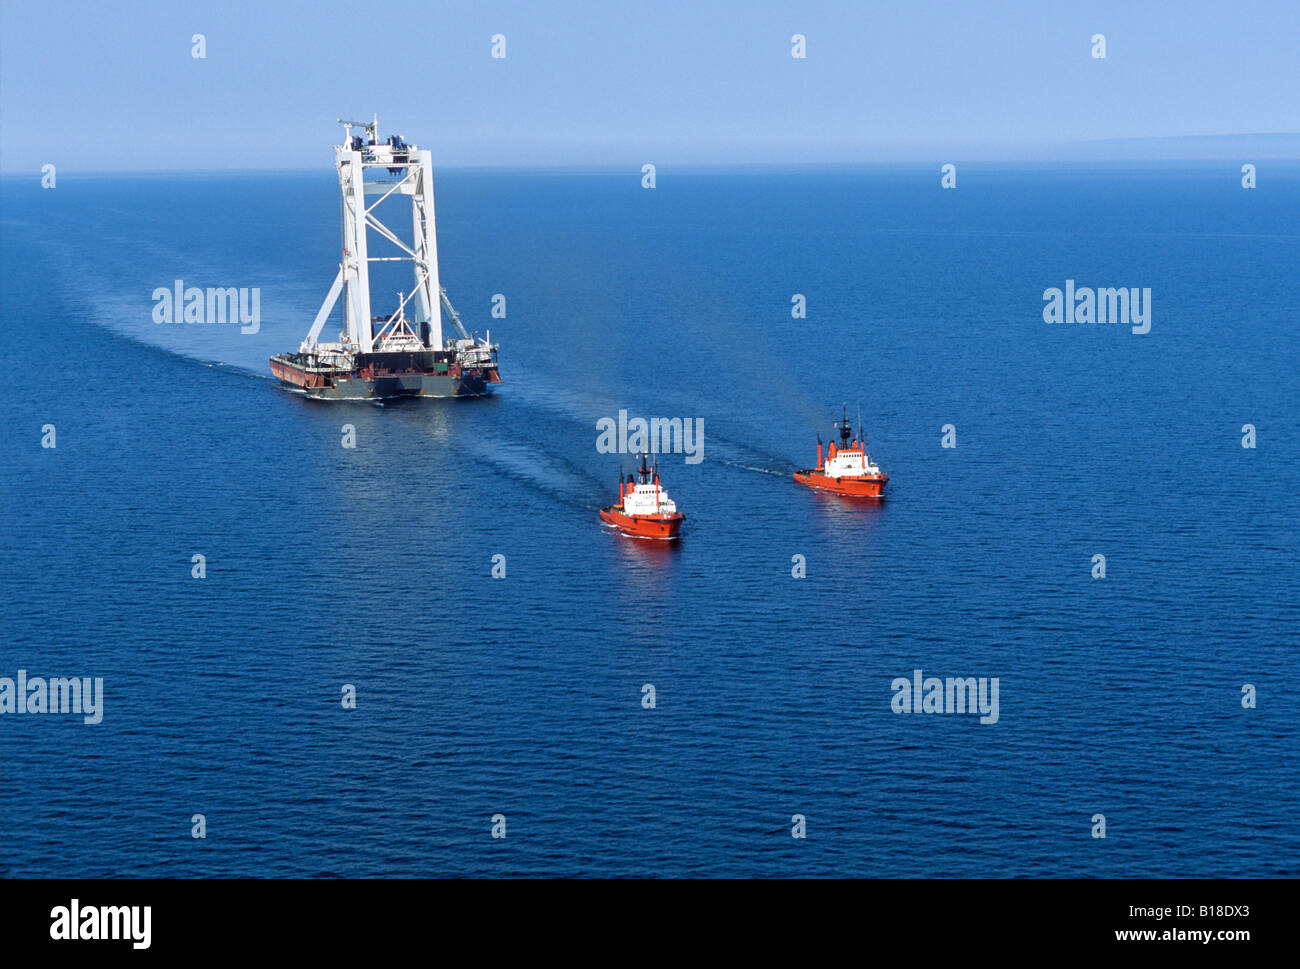 Antenne des "Svanen" Kran geschleppt durch zwei Schlepper, Northumberland Strait, Prince Edward Canada, Bund gehen Stockfotografie - Alamy